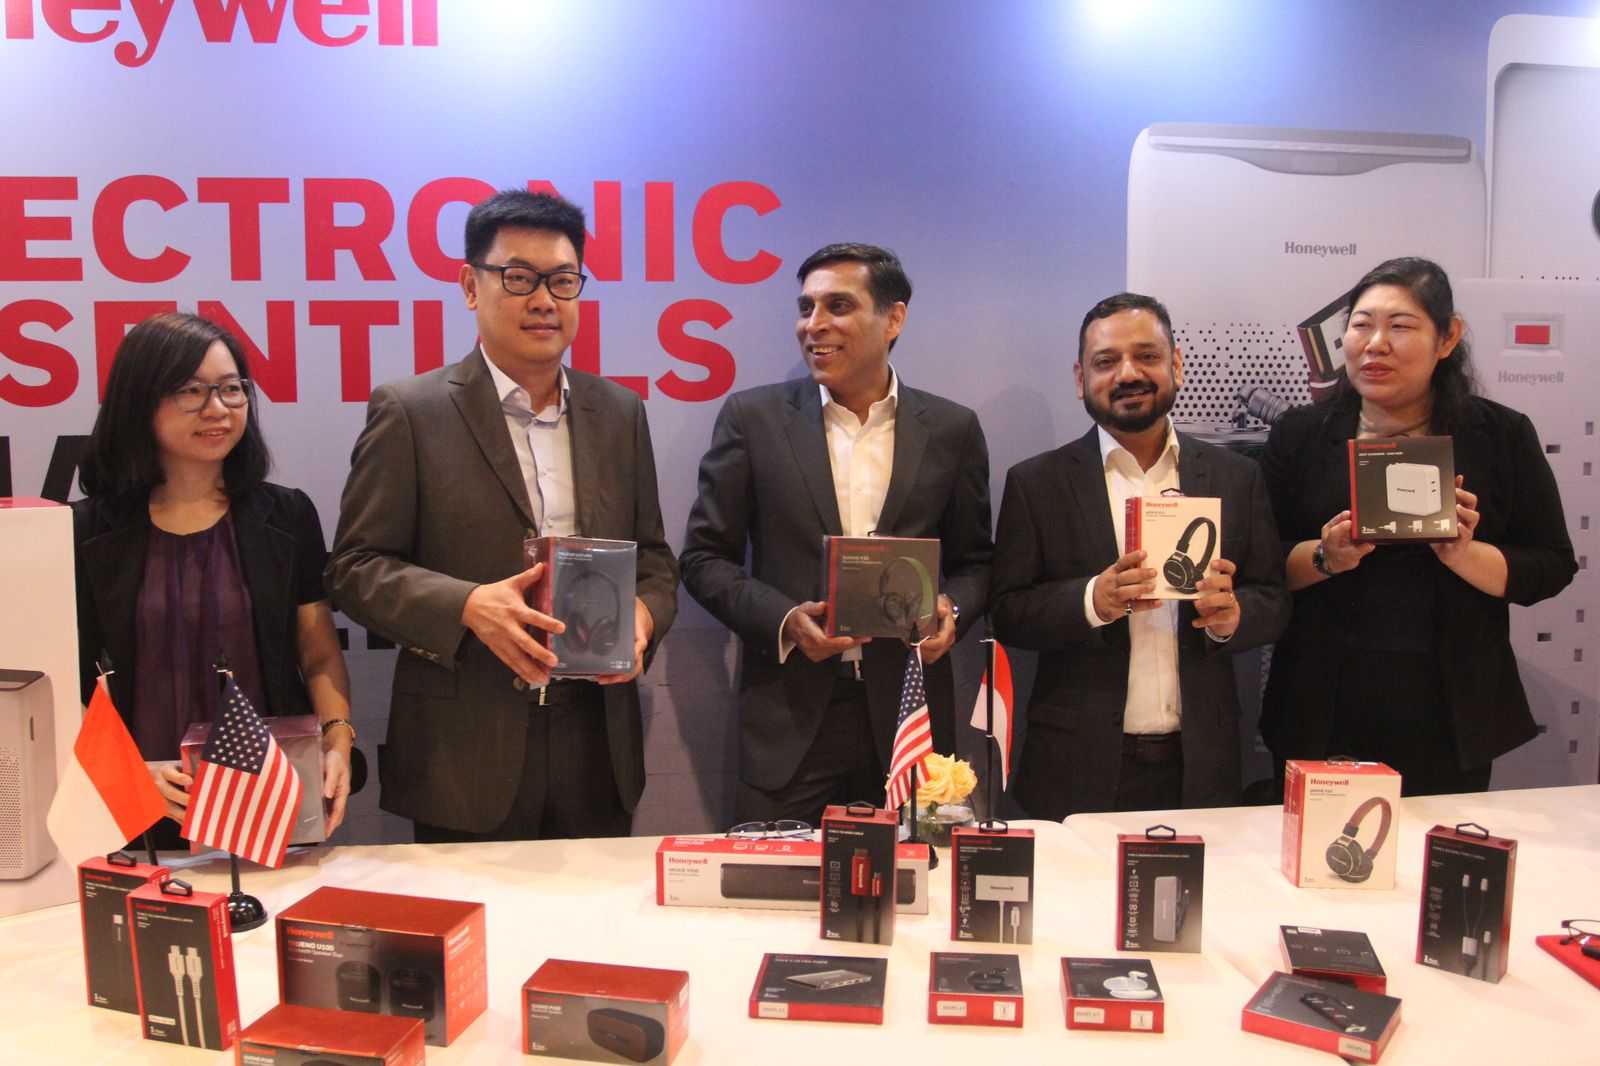 Secure Connection Umumkan Peluncuran Produk Berlisensi Honeywell di Indonesia